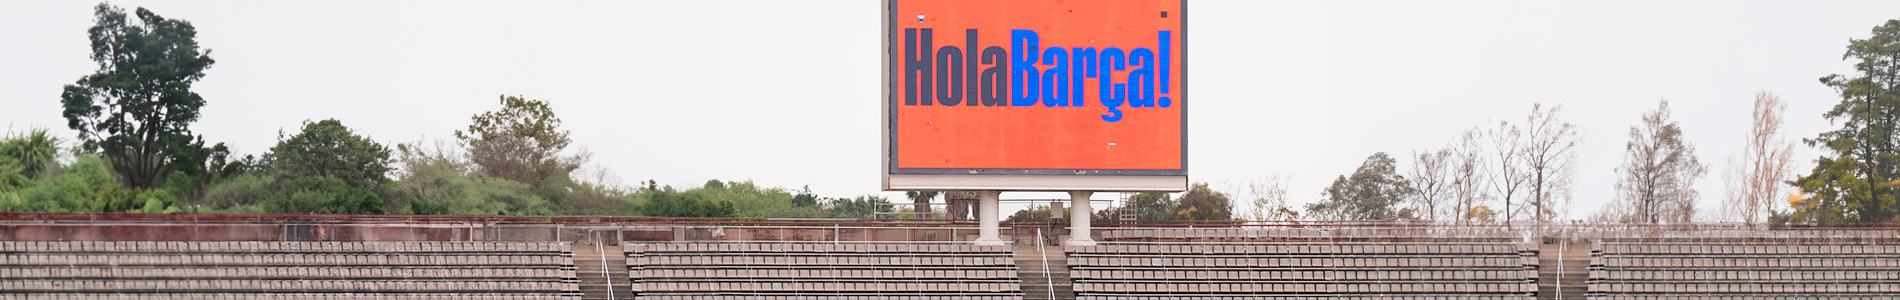 Grades Estadi Olímpic amb el cartell "Hola Barça"